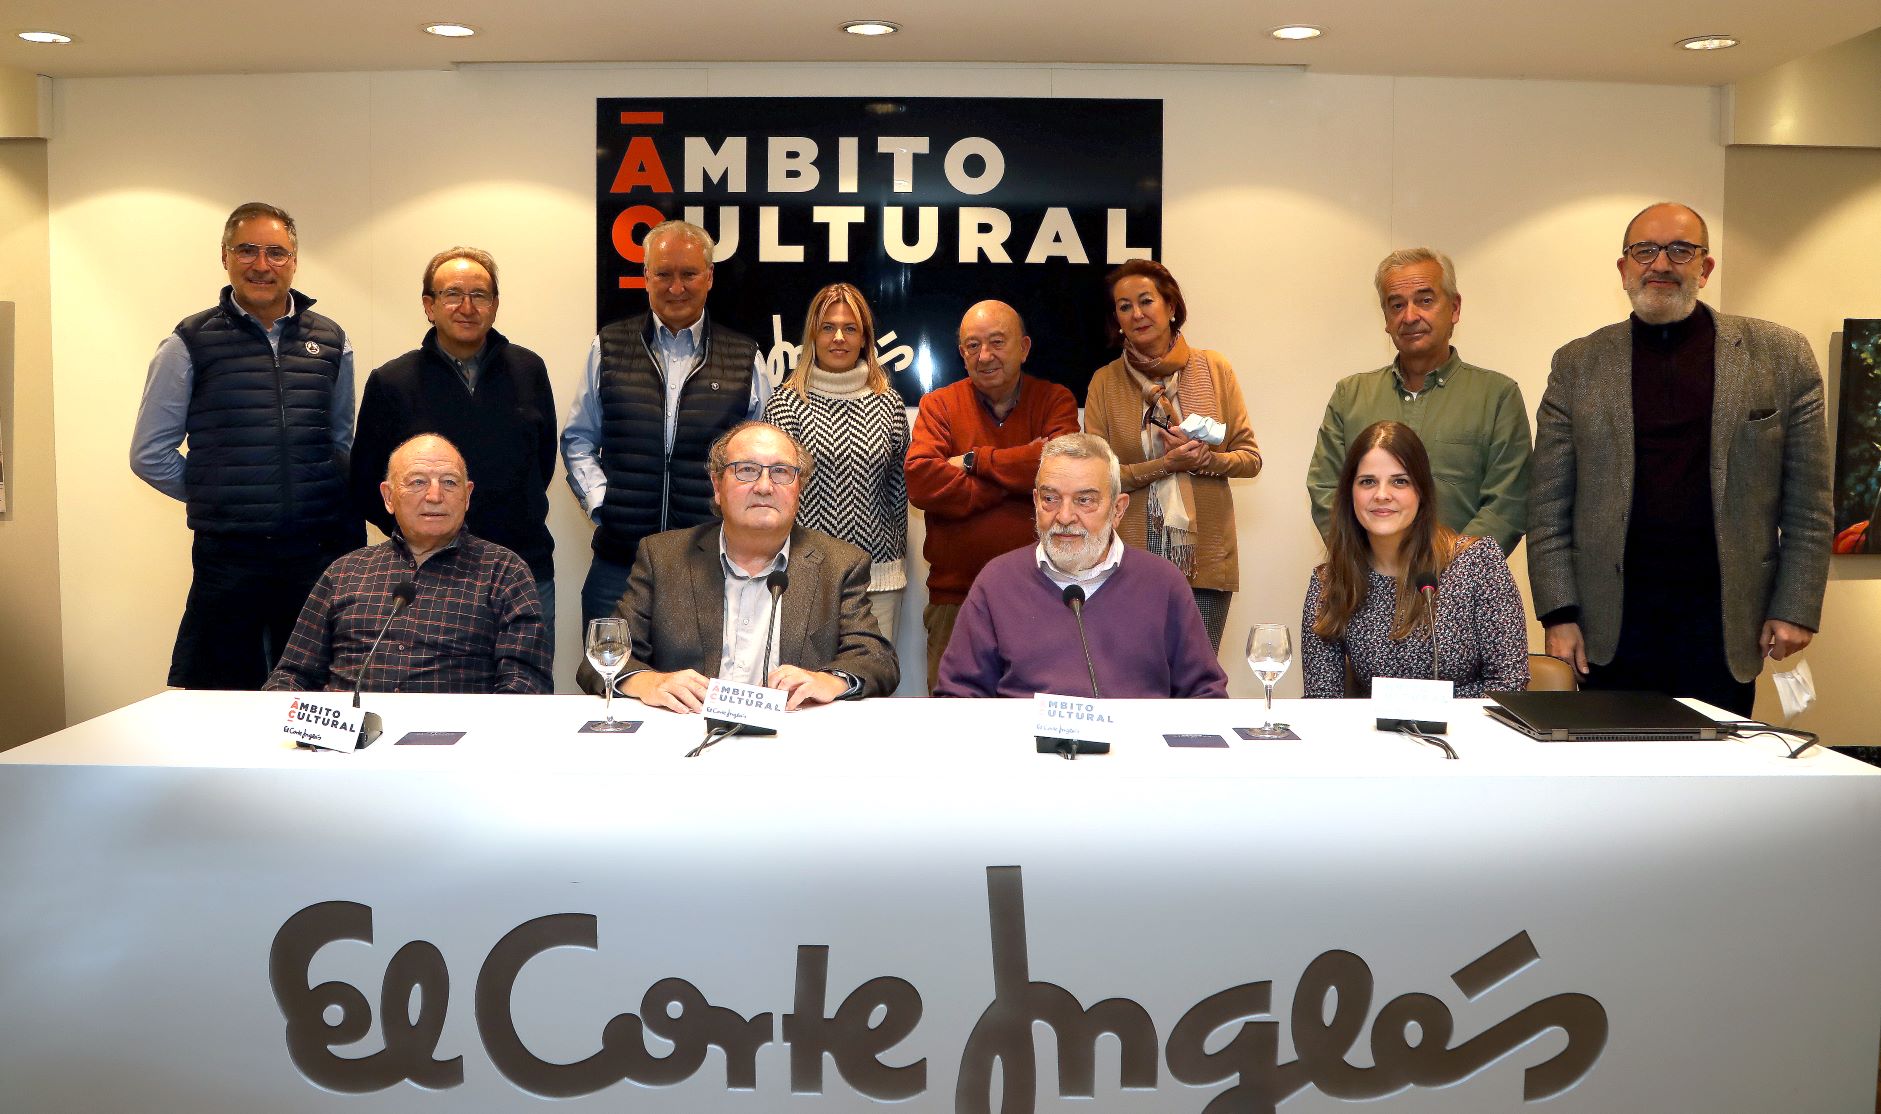 La Academia Aragonesa de Gastronomía inicia un nuevo ciclo de charlas gastronómicas en el Ámbito Cultural de El Corte Inglés.